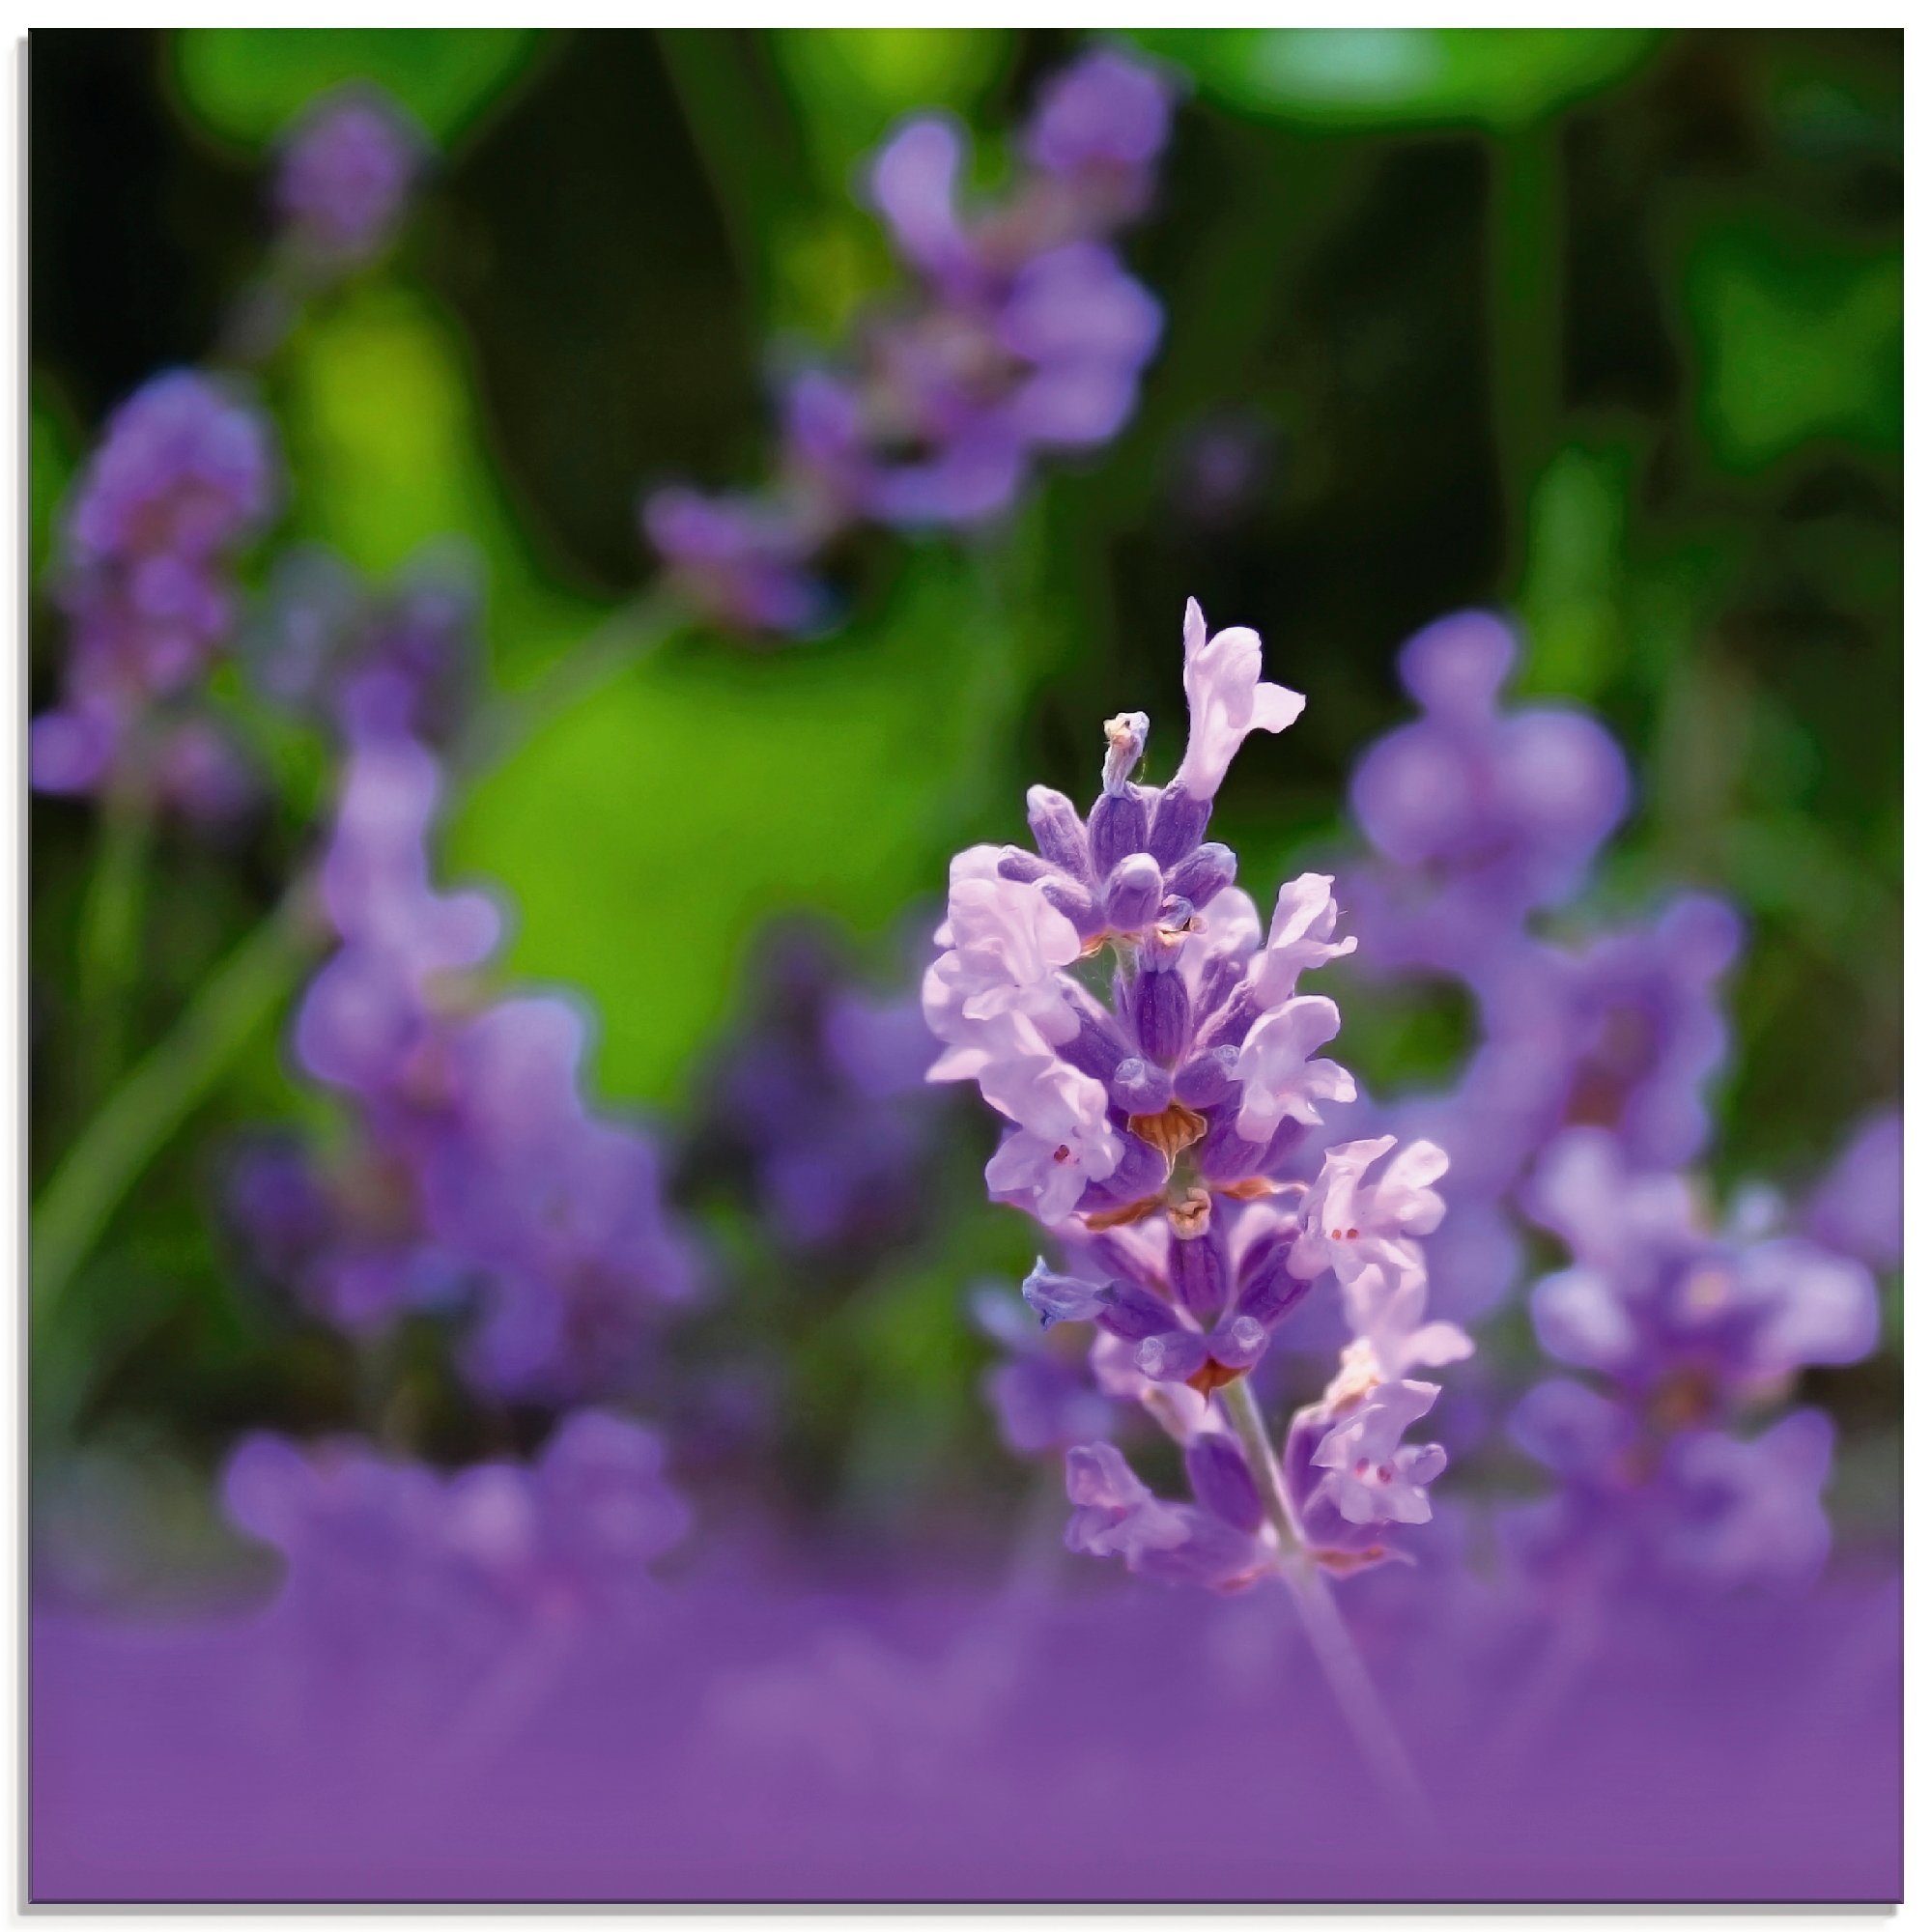 Artland Glasbild Lavendel, Blumen (1 St), in verschiedenen Größen